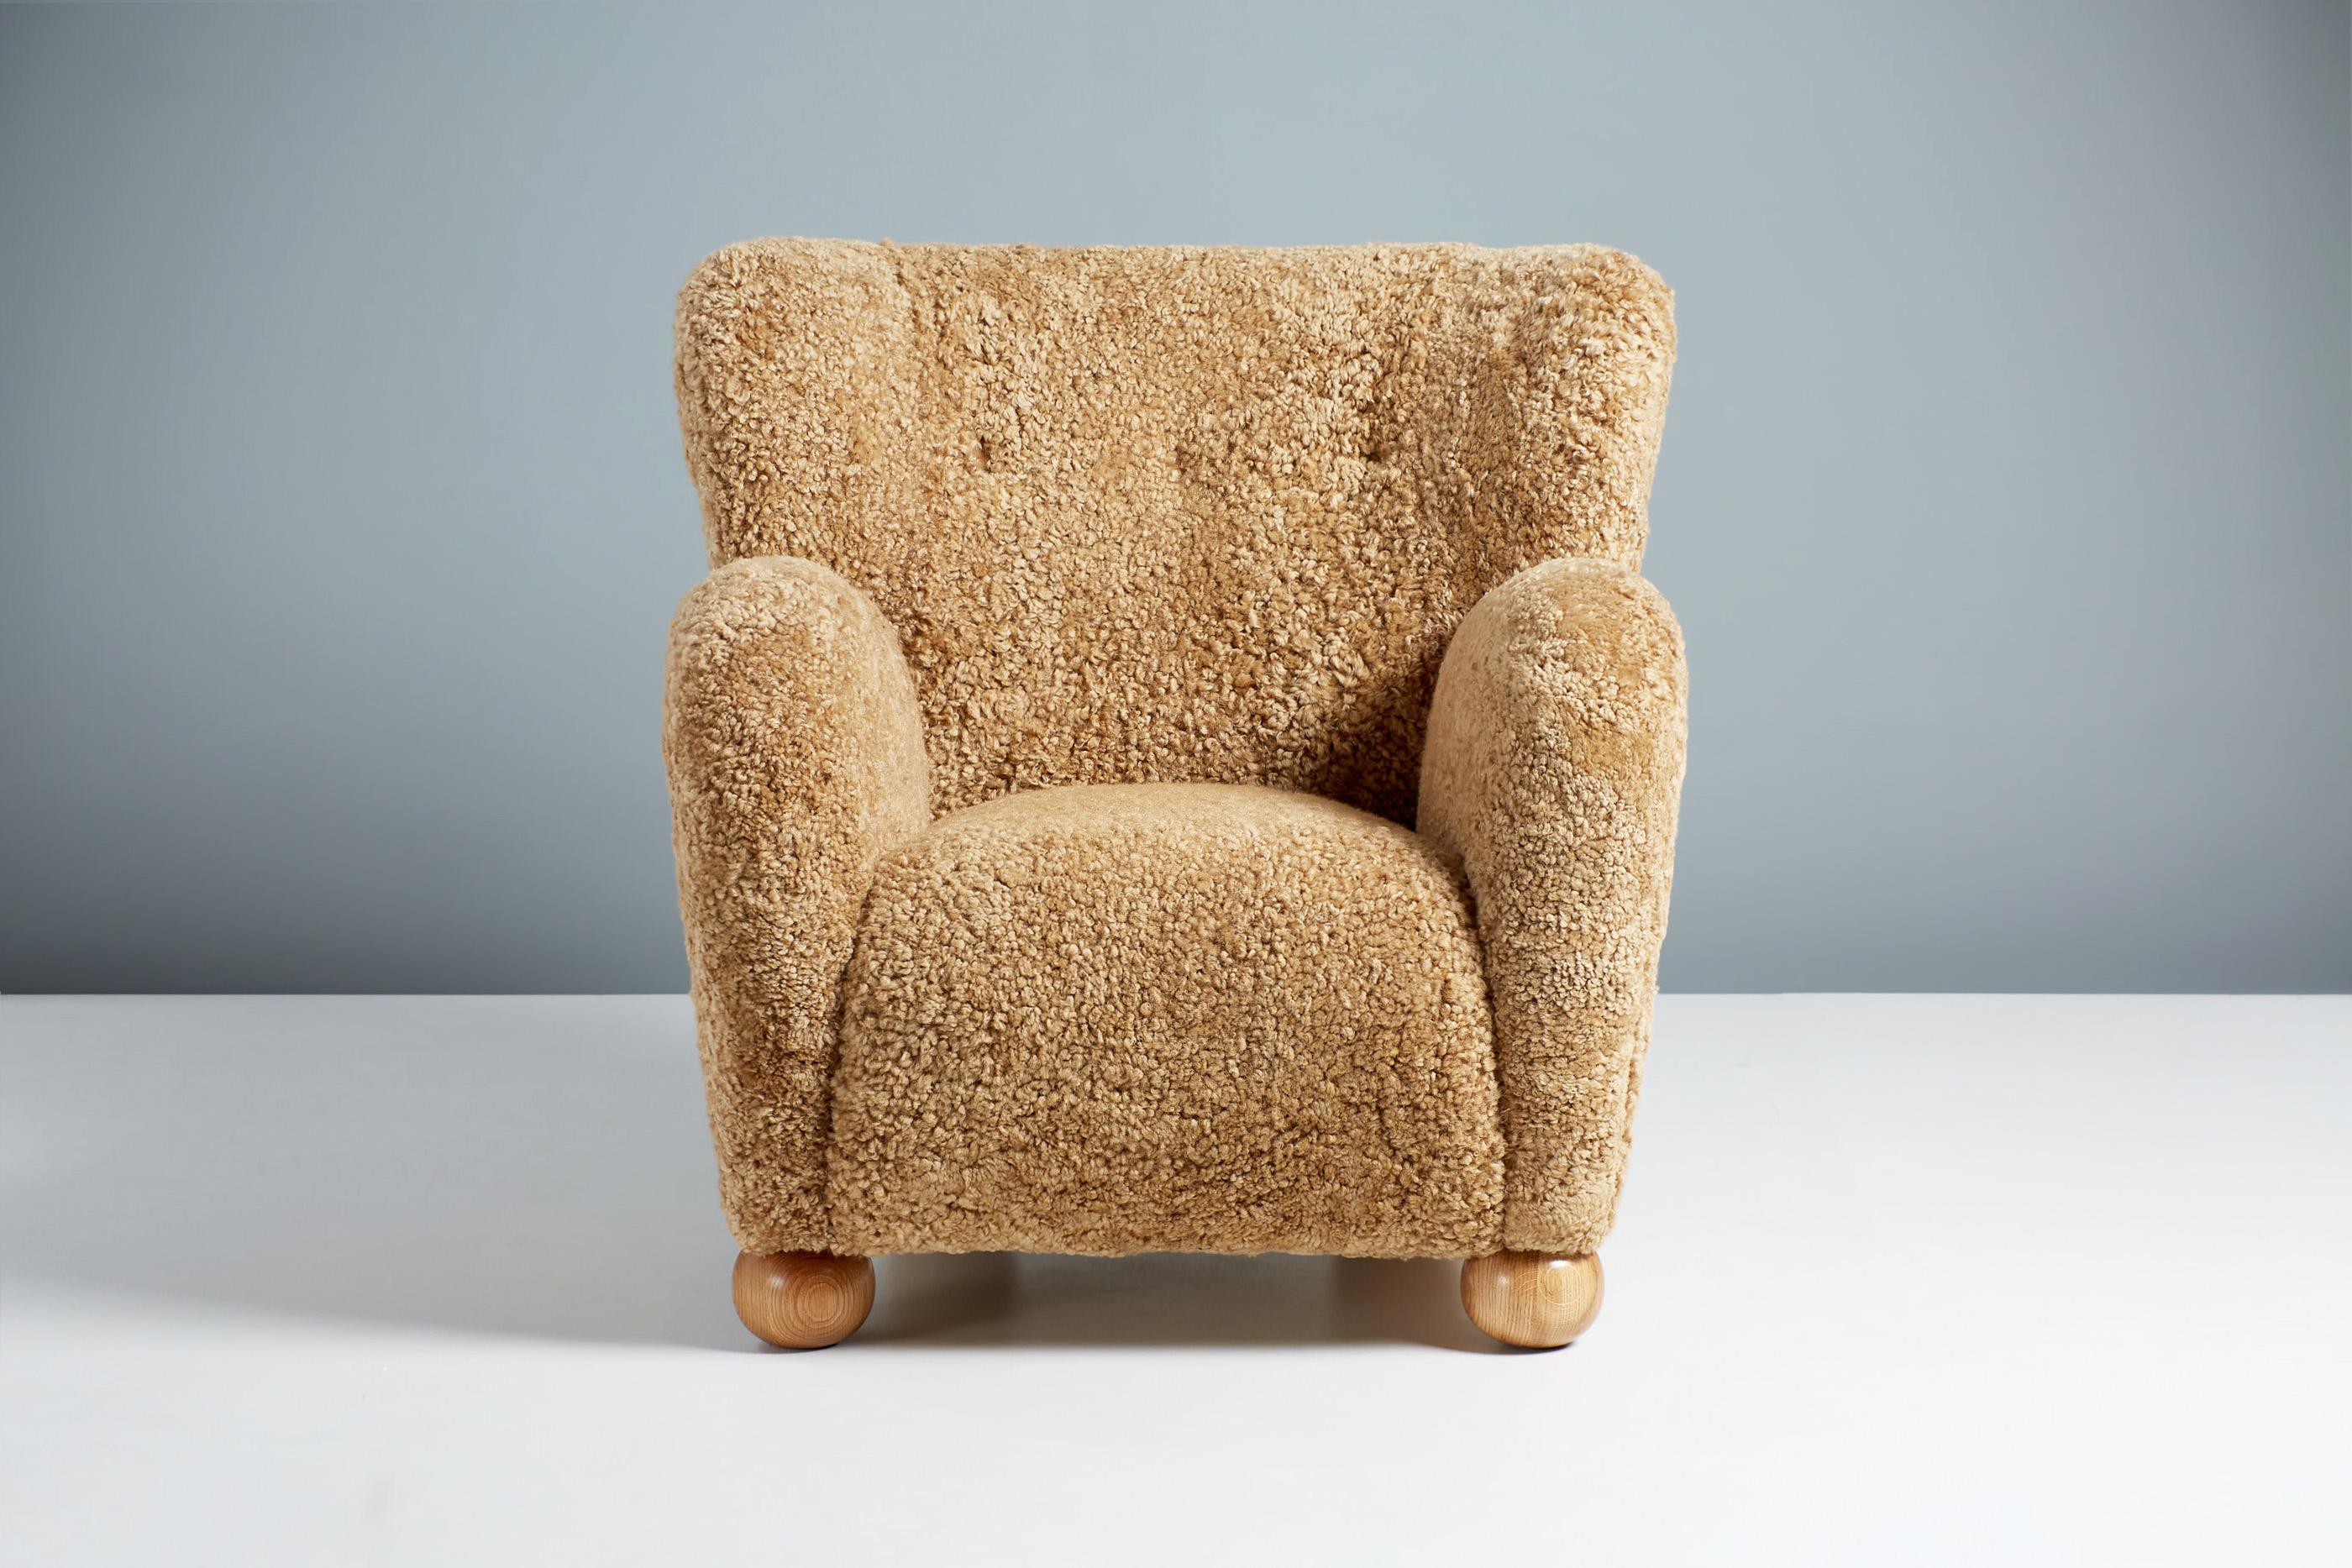 Dagmar design - Sessel Karu

Der Sessel Karu wird auf Bestellung in unseren Werkstätten in Großbritannien handgefertigt und besteht aus einem massiven Buchenholzrahmen und einem voll gefederten Sitz. Die runden Kugelfüße sind in geölter Eiche,